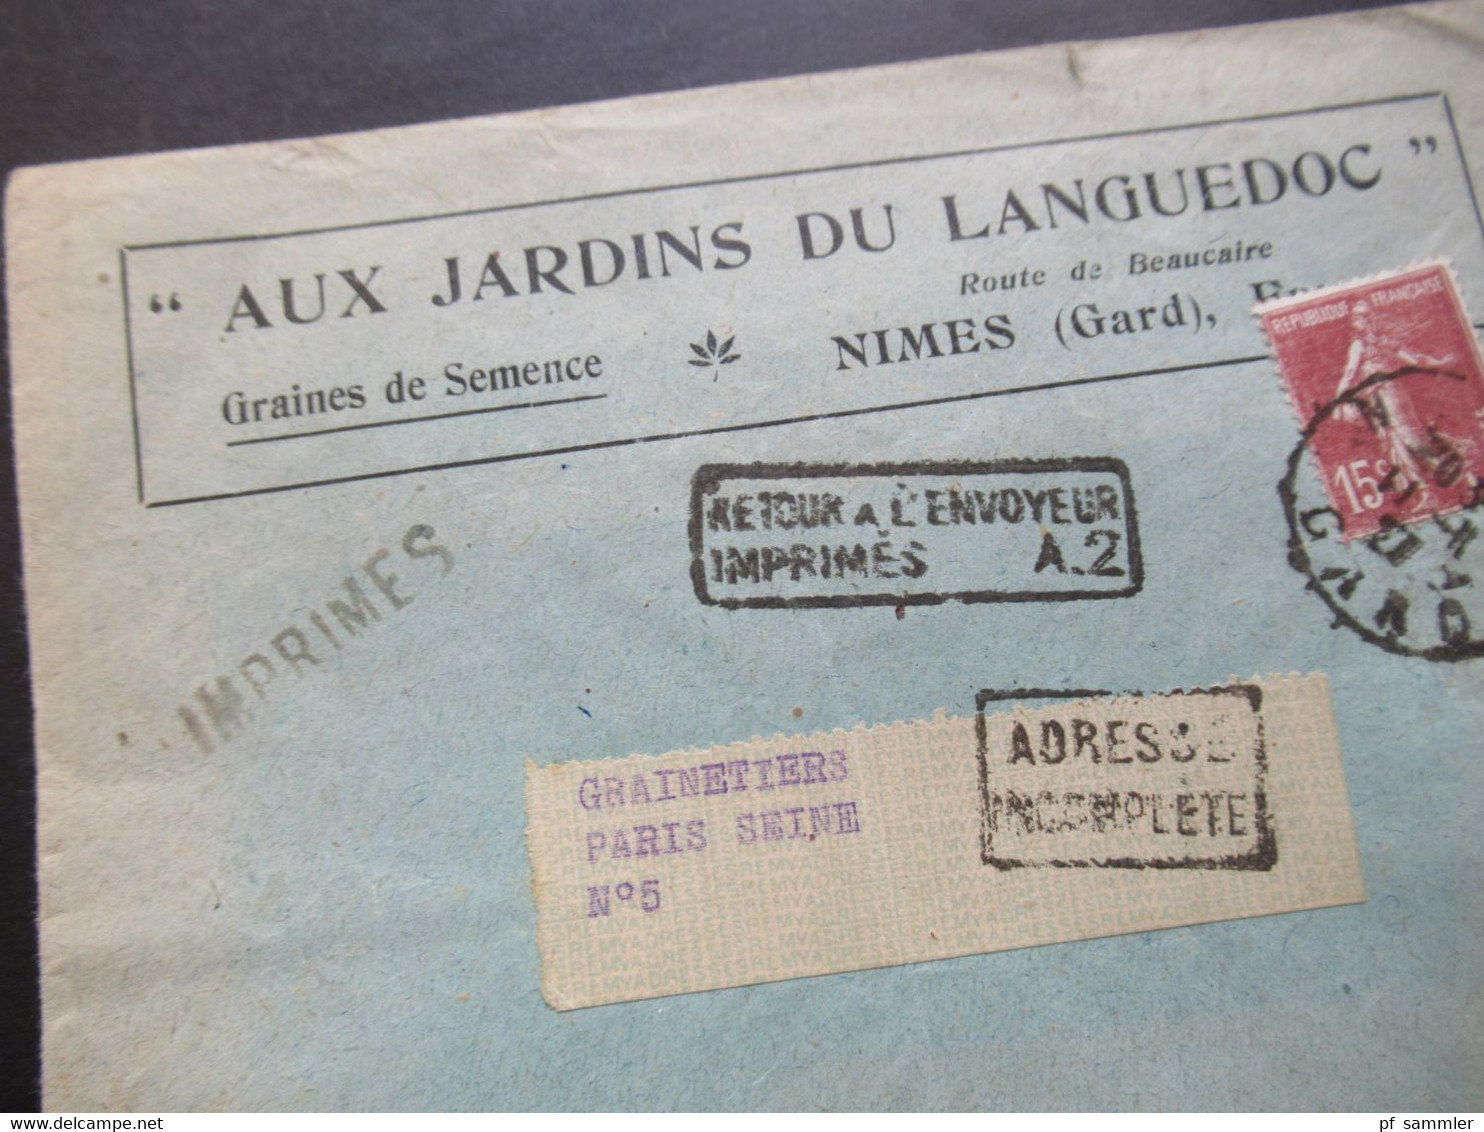 Frankreich 1927 Säerin Aux Jardins Du Languedoc Stempel Ra2 Retour A L'Envoyeur Imprimes A.2 Und Adresse Incomplete - 1906-38 Semeuse Con Cameo